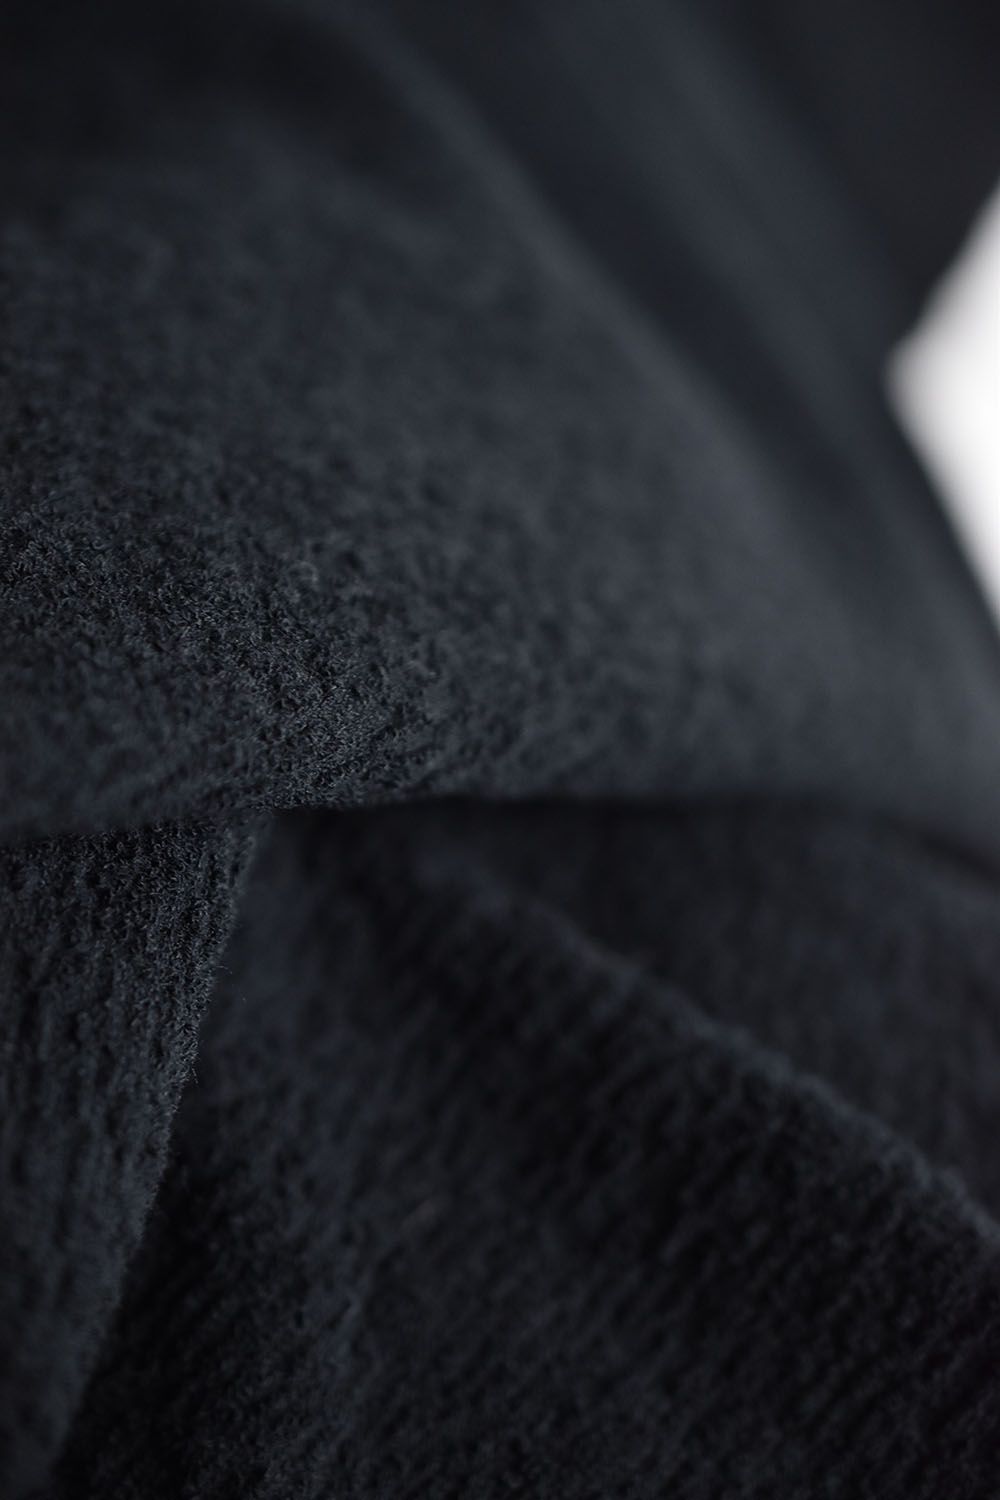 Random Pile Fabric Cut & Swen"Black"/ランダムパイルファブリックカットソー"ブラック"